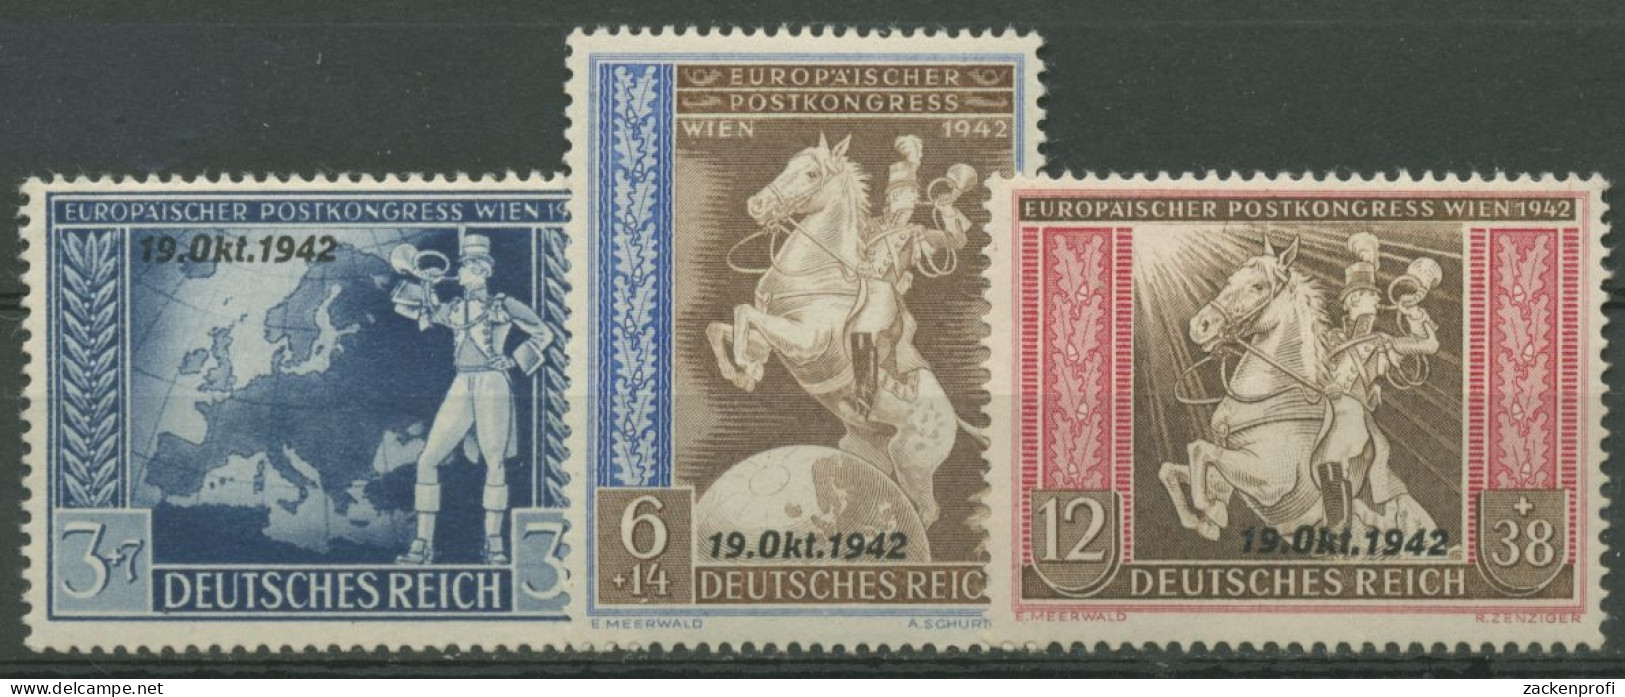 Deutsches Reich 1942 Postkongress Mit Aufdruck 823/25 Mit Falz - Ungebraucht